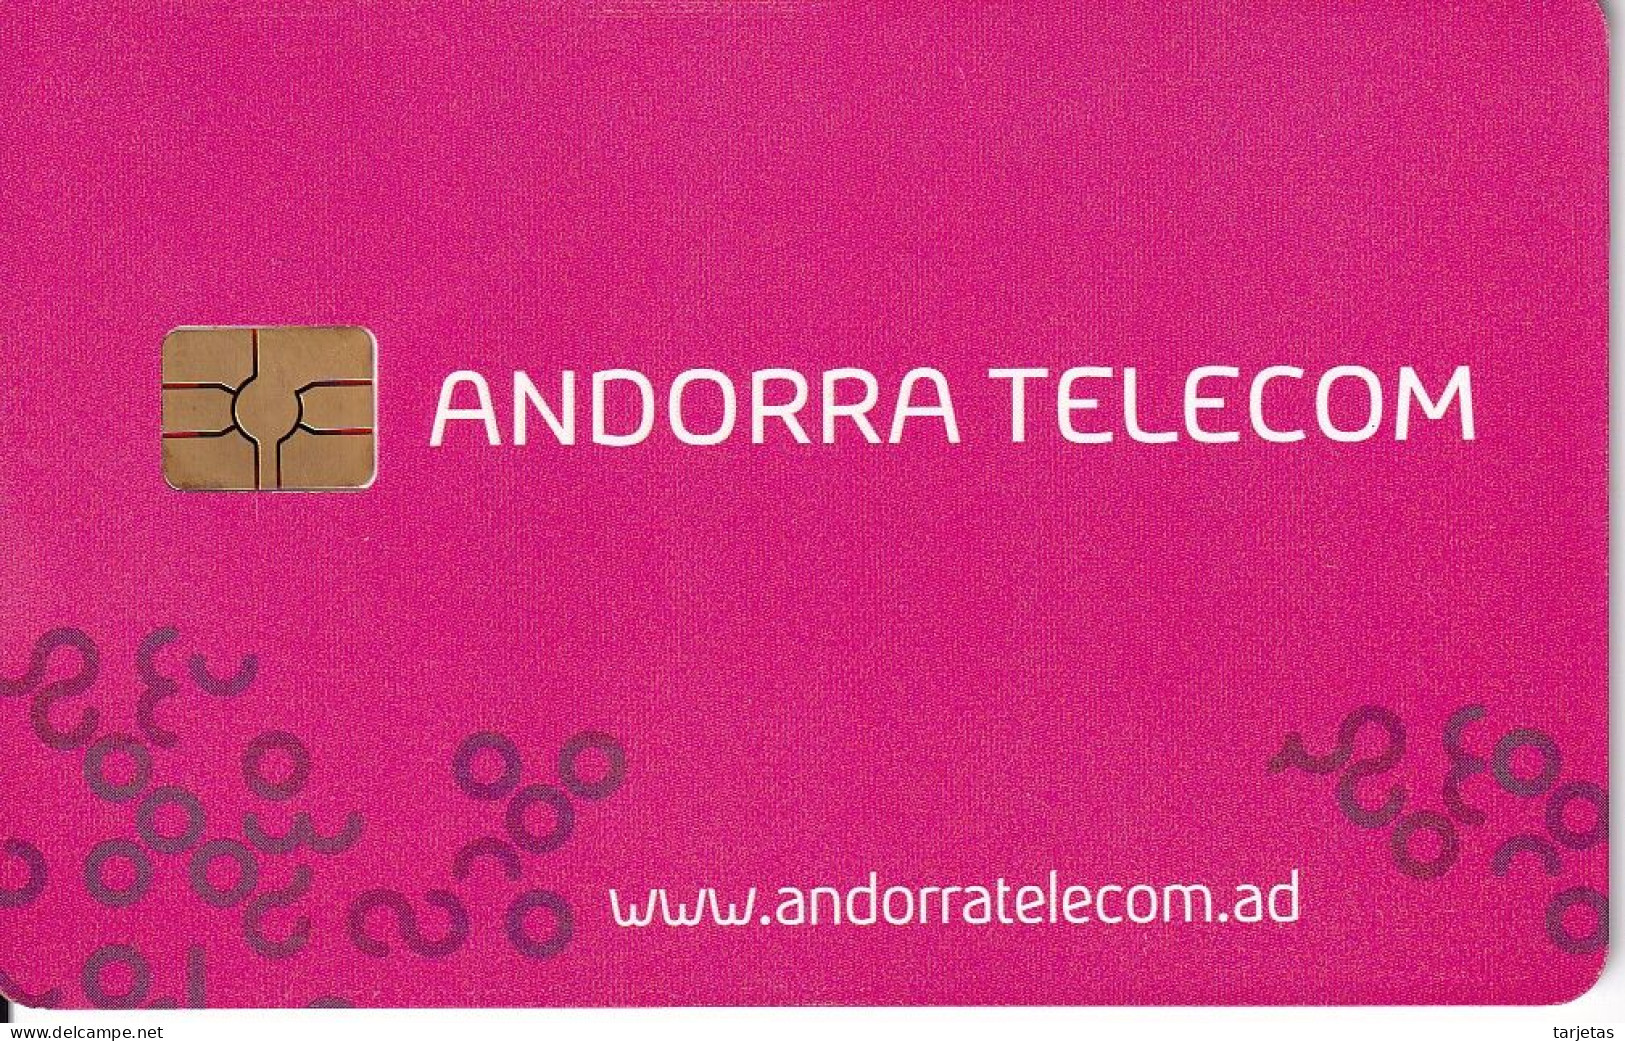 AND-161 TARJETA DE ANDORRA TELECOM DE 3 EUROS DEL 07/09 - Andorra